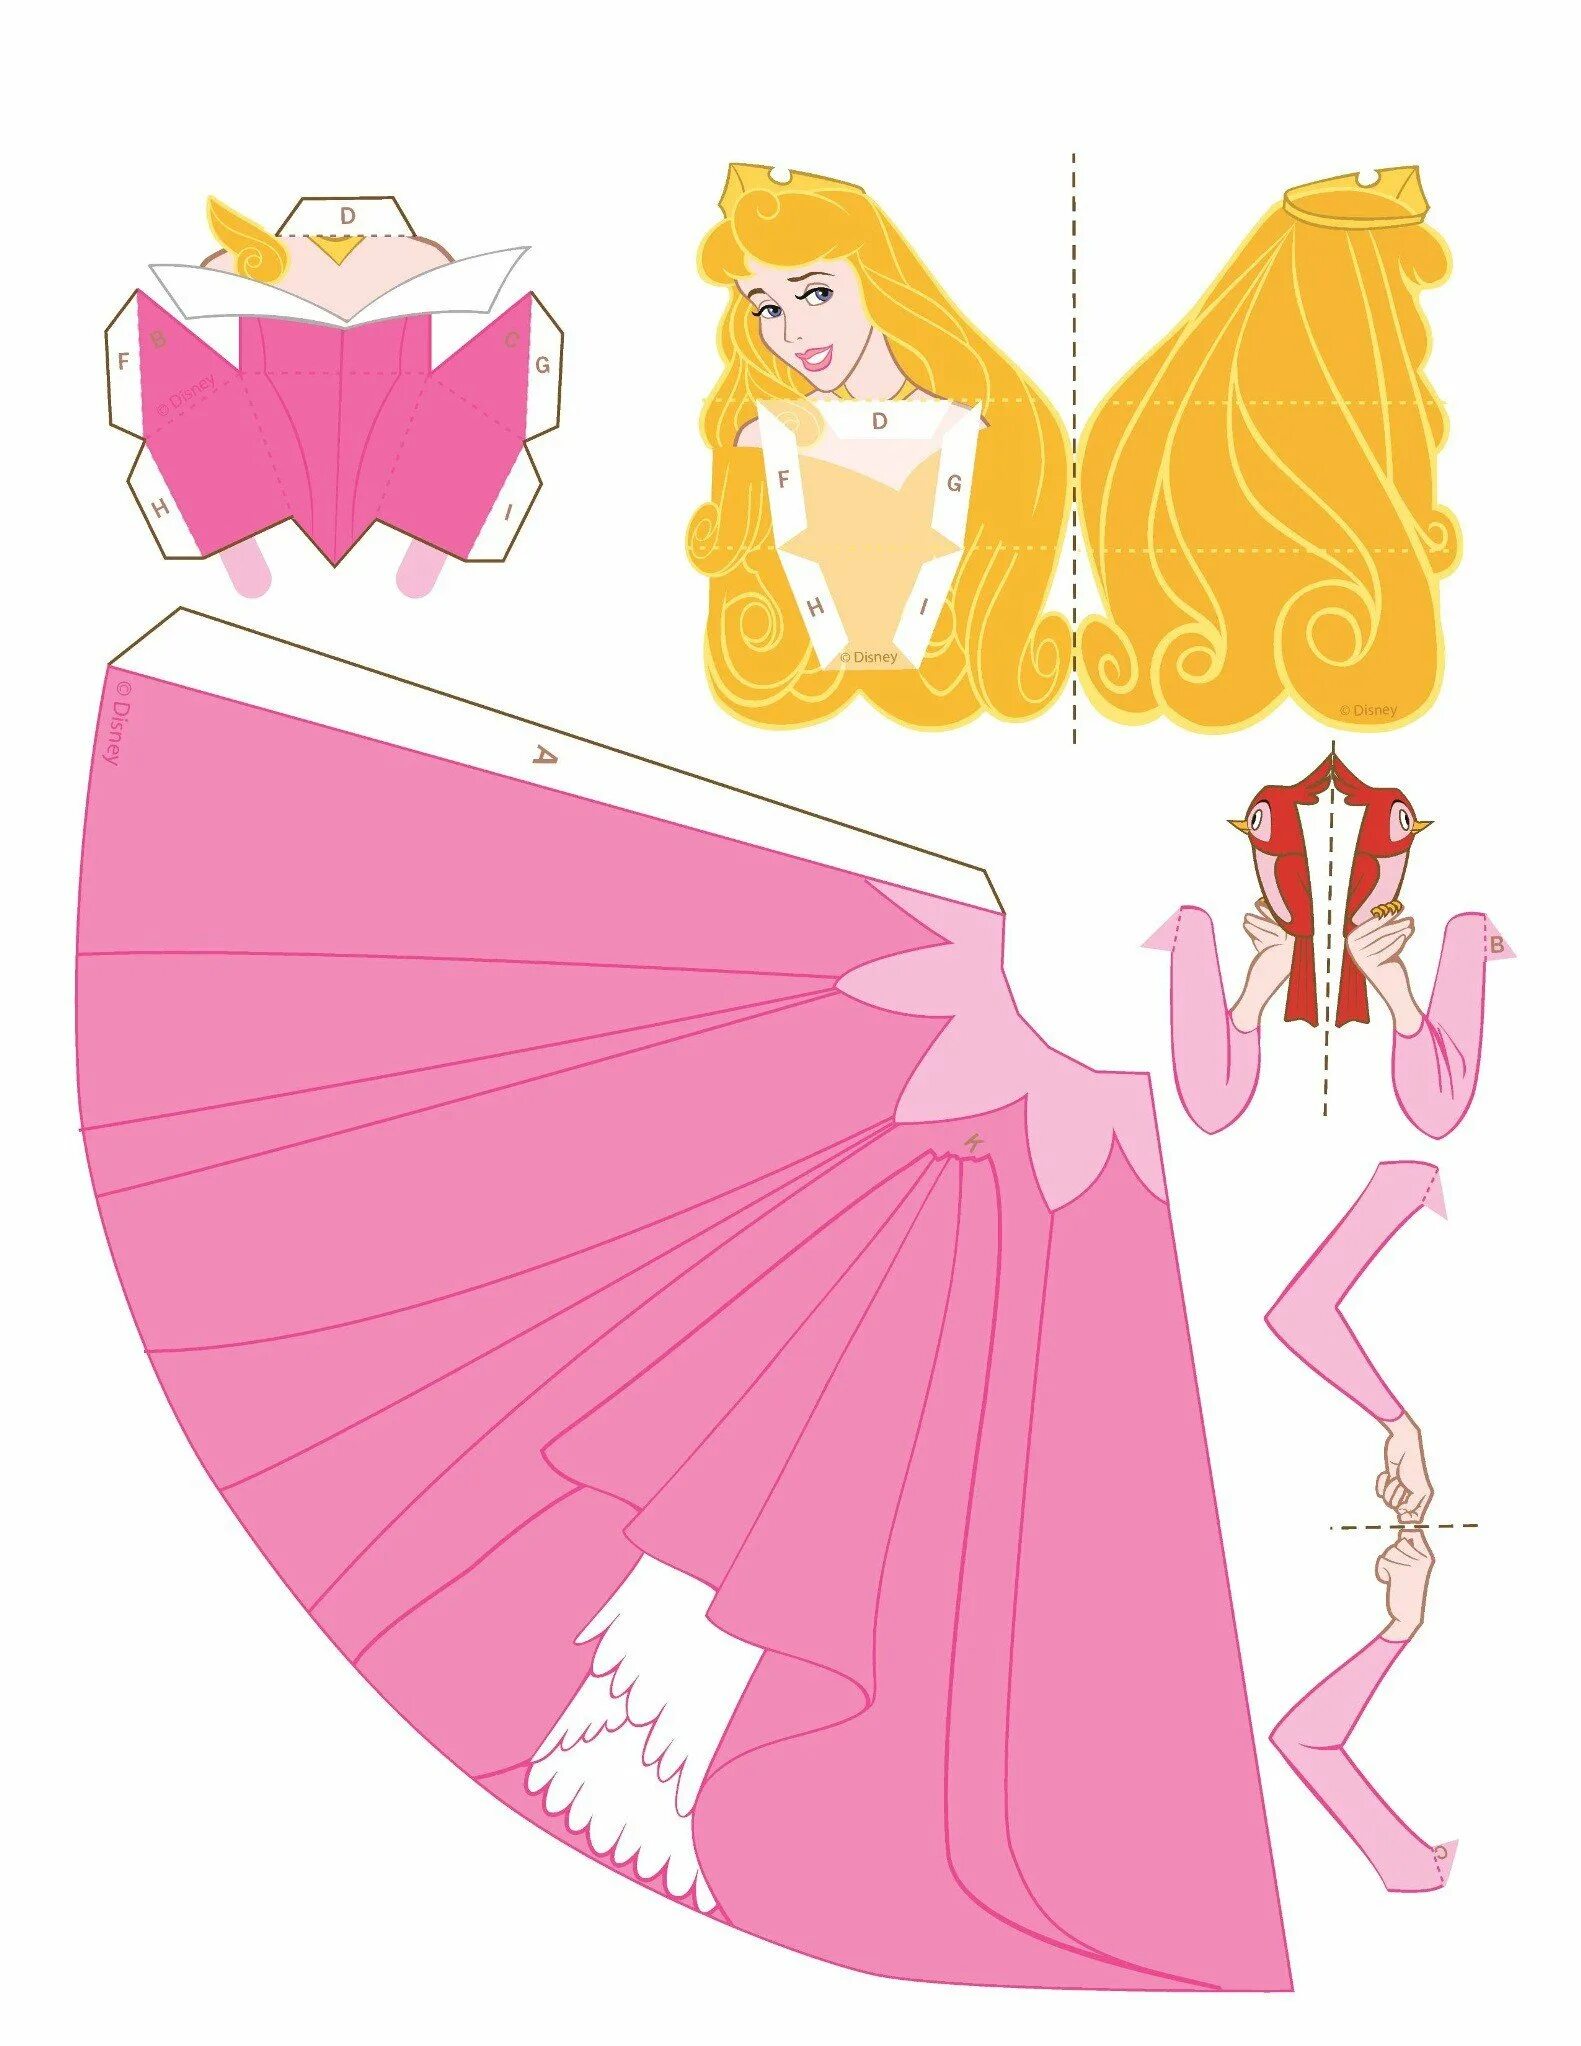 Паперкрафт принцессы Диснея. Куклы бумажные принцессы Диснея объемные. Кукла из бумаги объемная. Кукла из бумаги видео